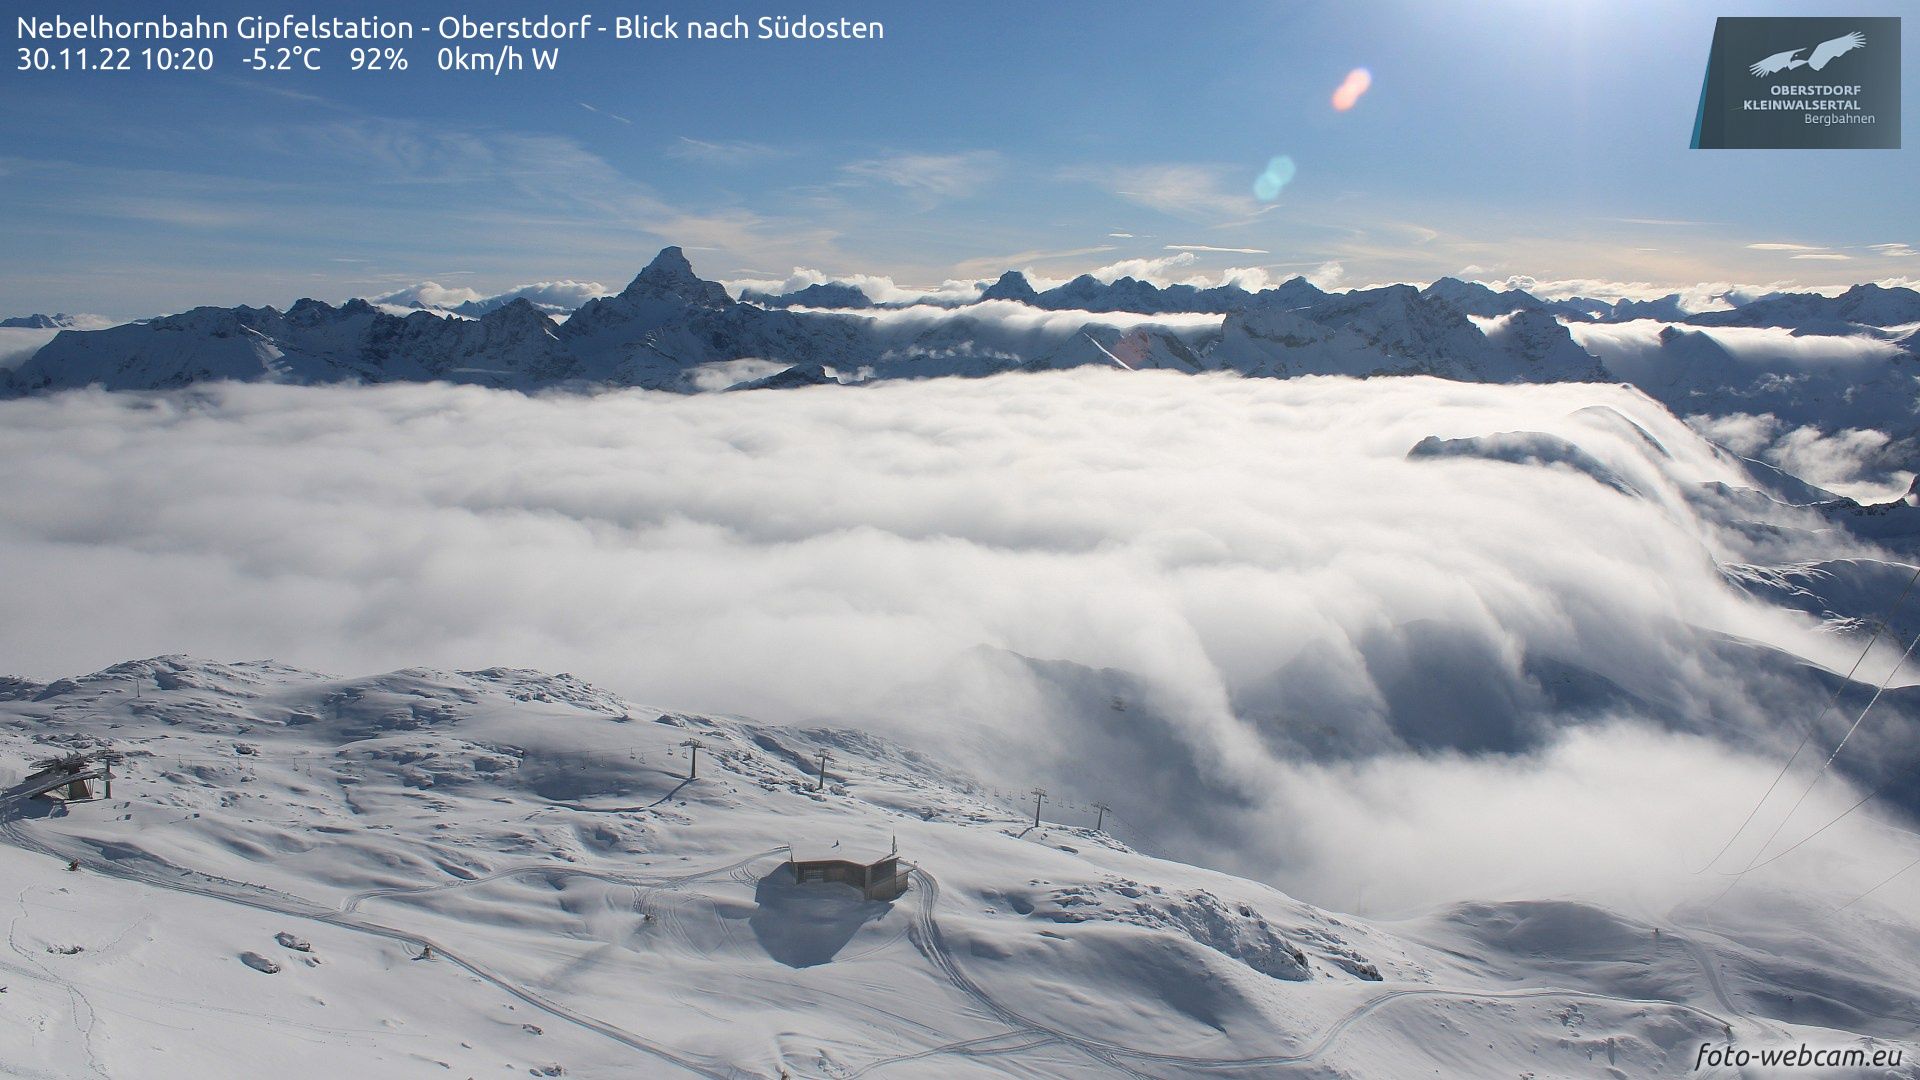 Low-level clouds with sunny conditions aloft (Nebelhorn, foto-webcam.eu)